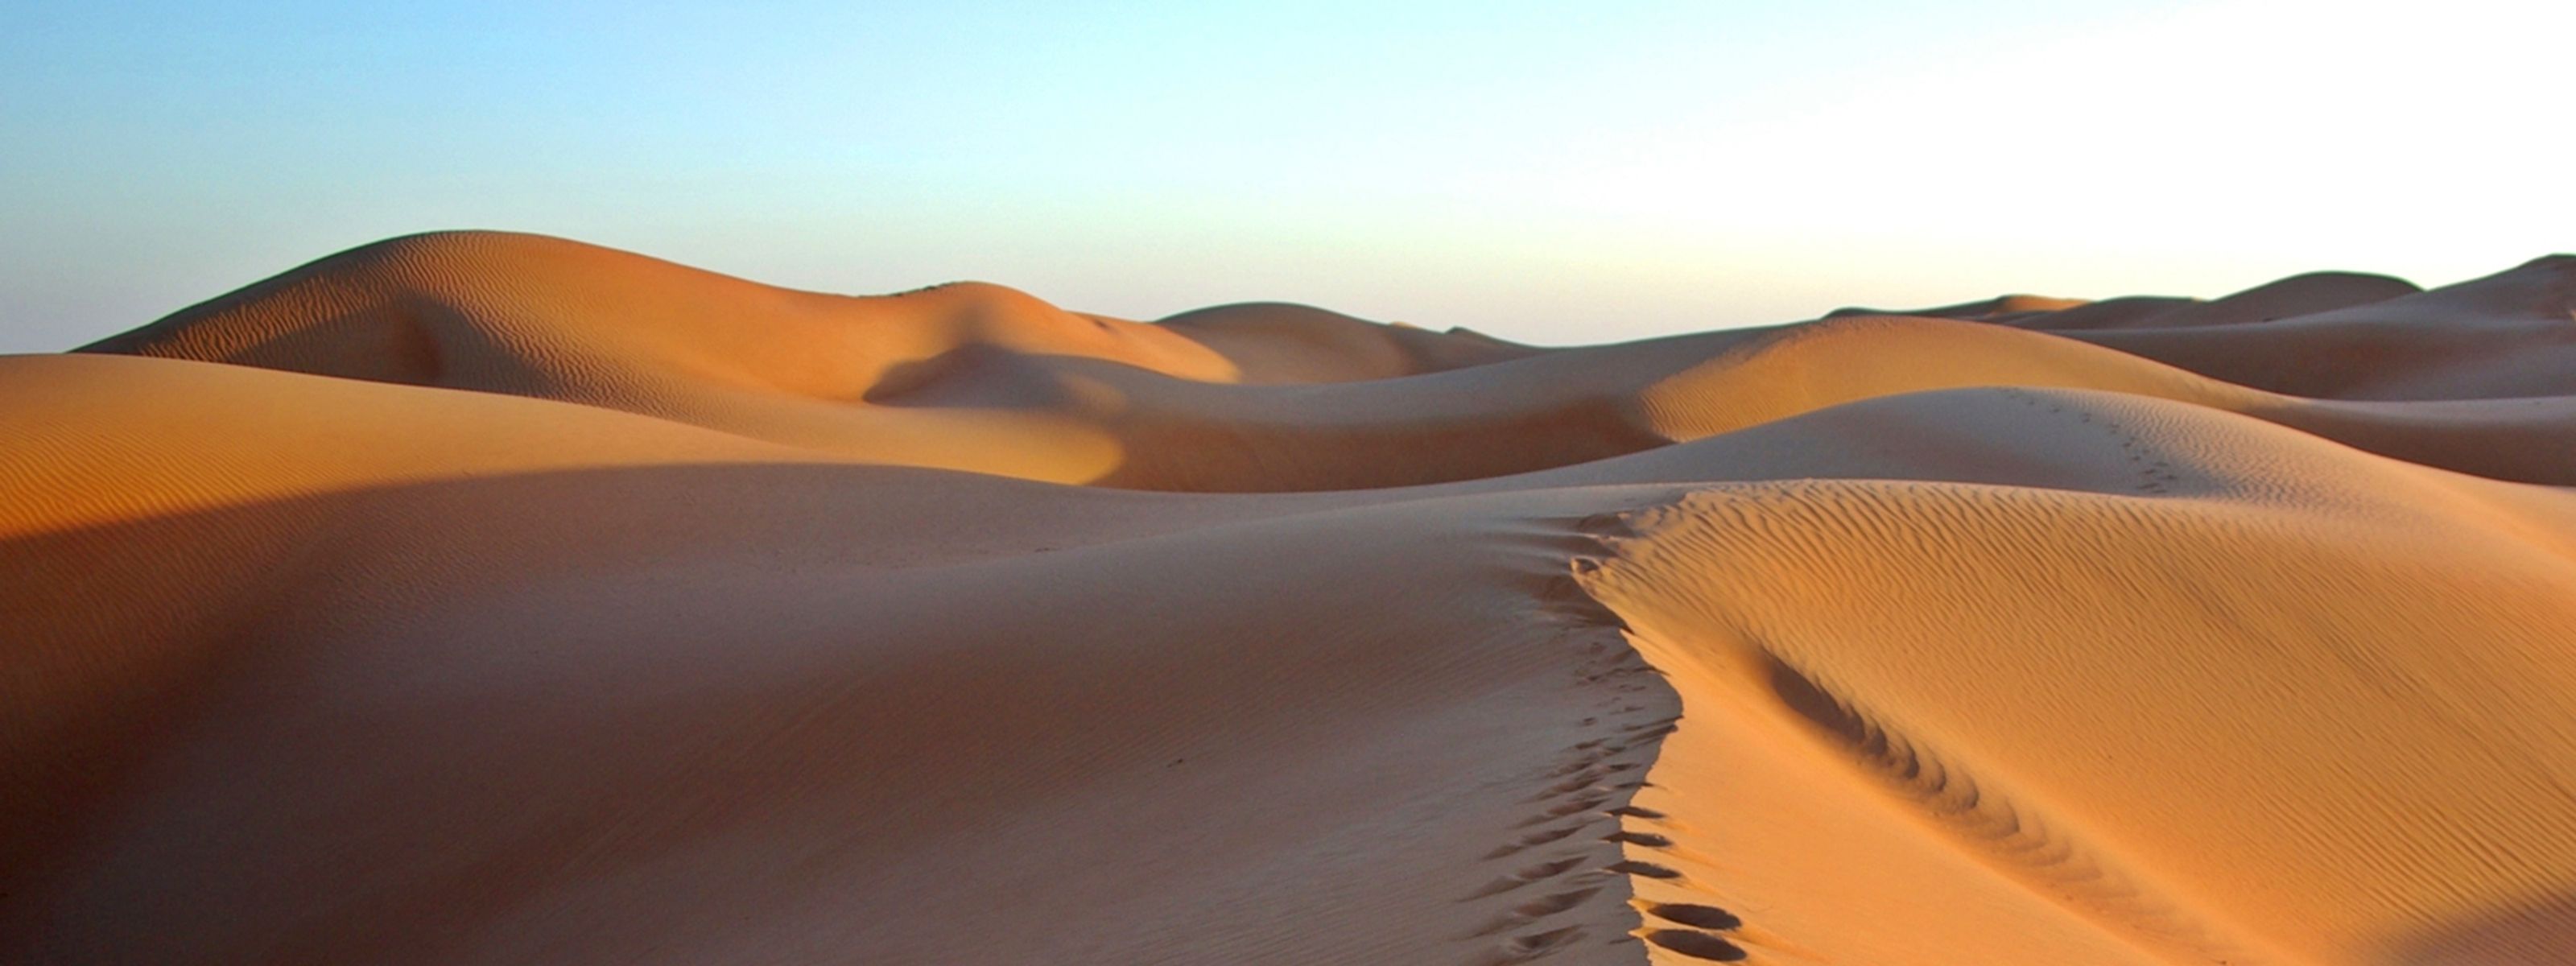 Entspannen in Oman - Traumstrand und Wüstenerlebnis